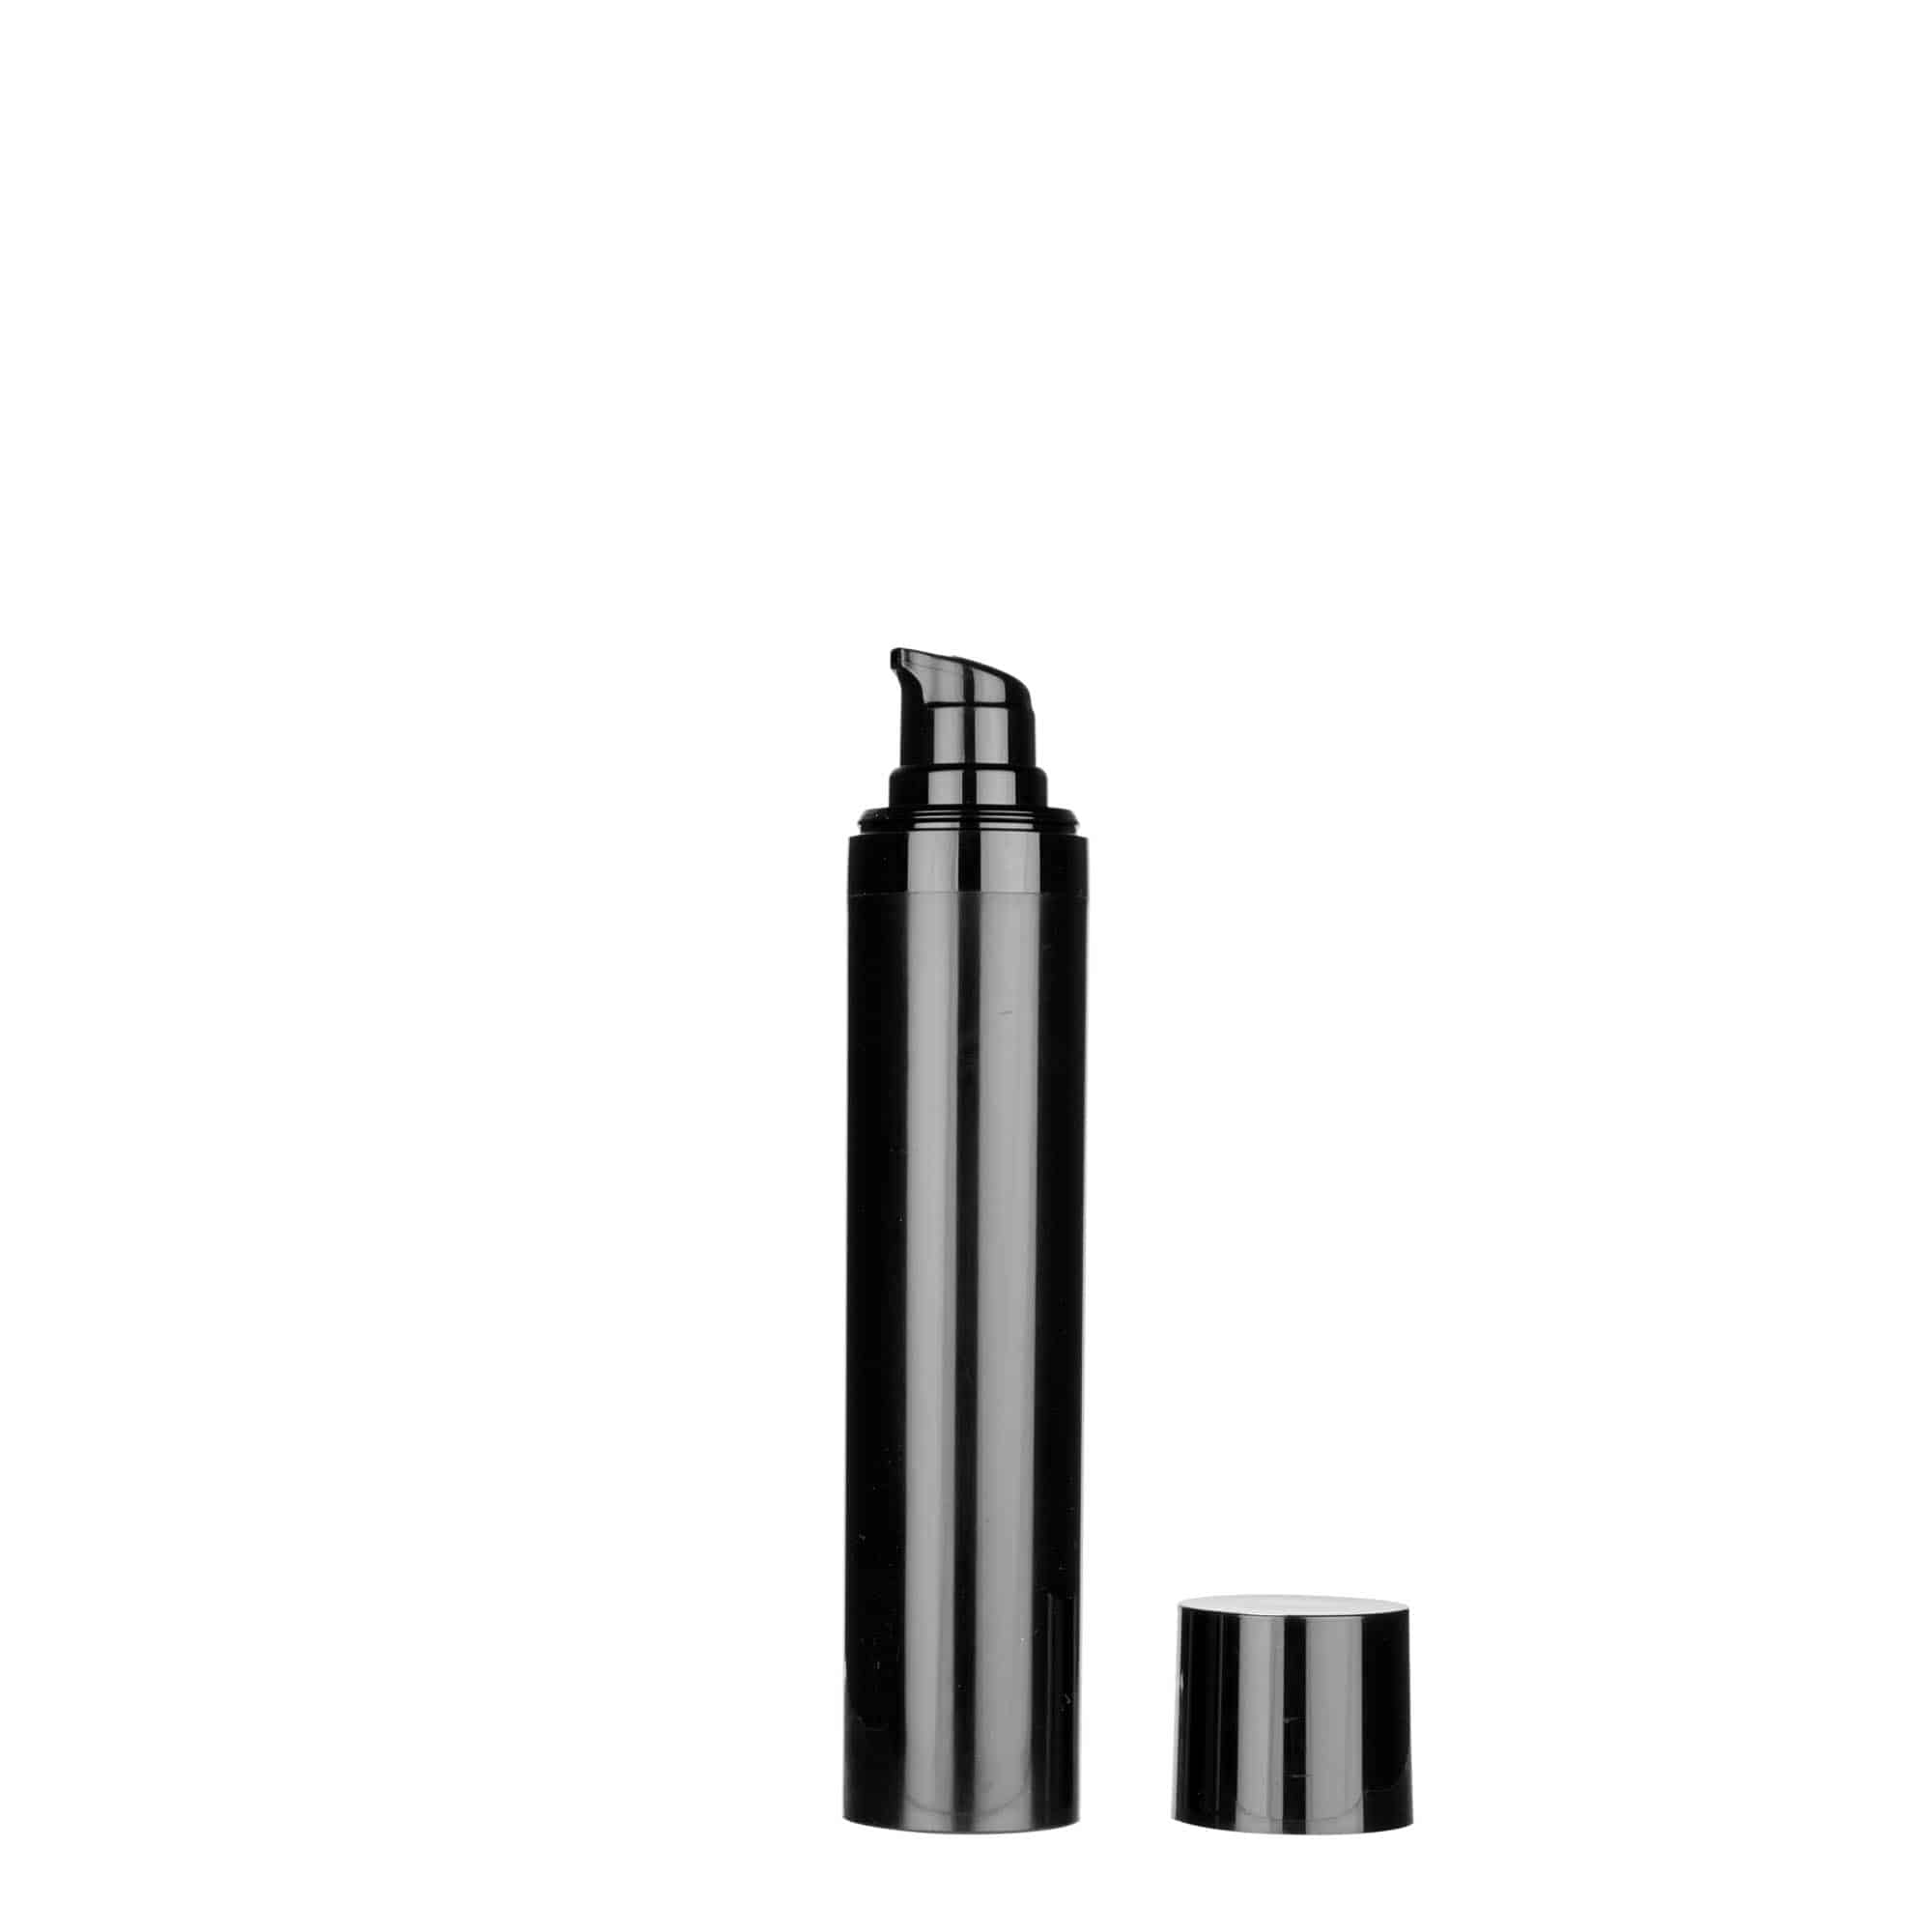 Bezvzduchový dávkovač 50 ml 'Micro', plast PP, černý